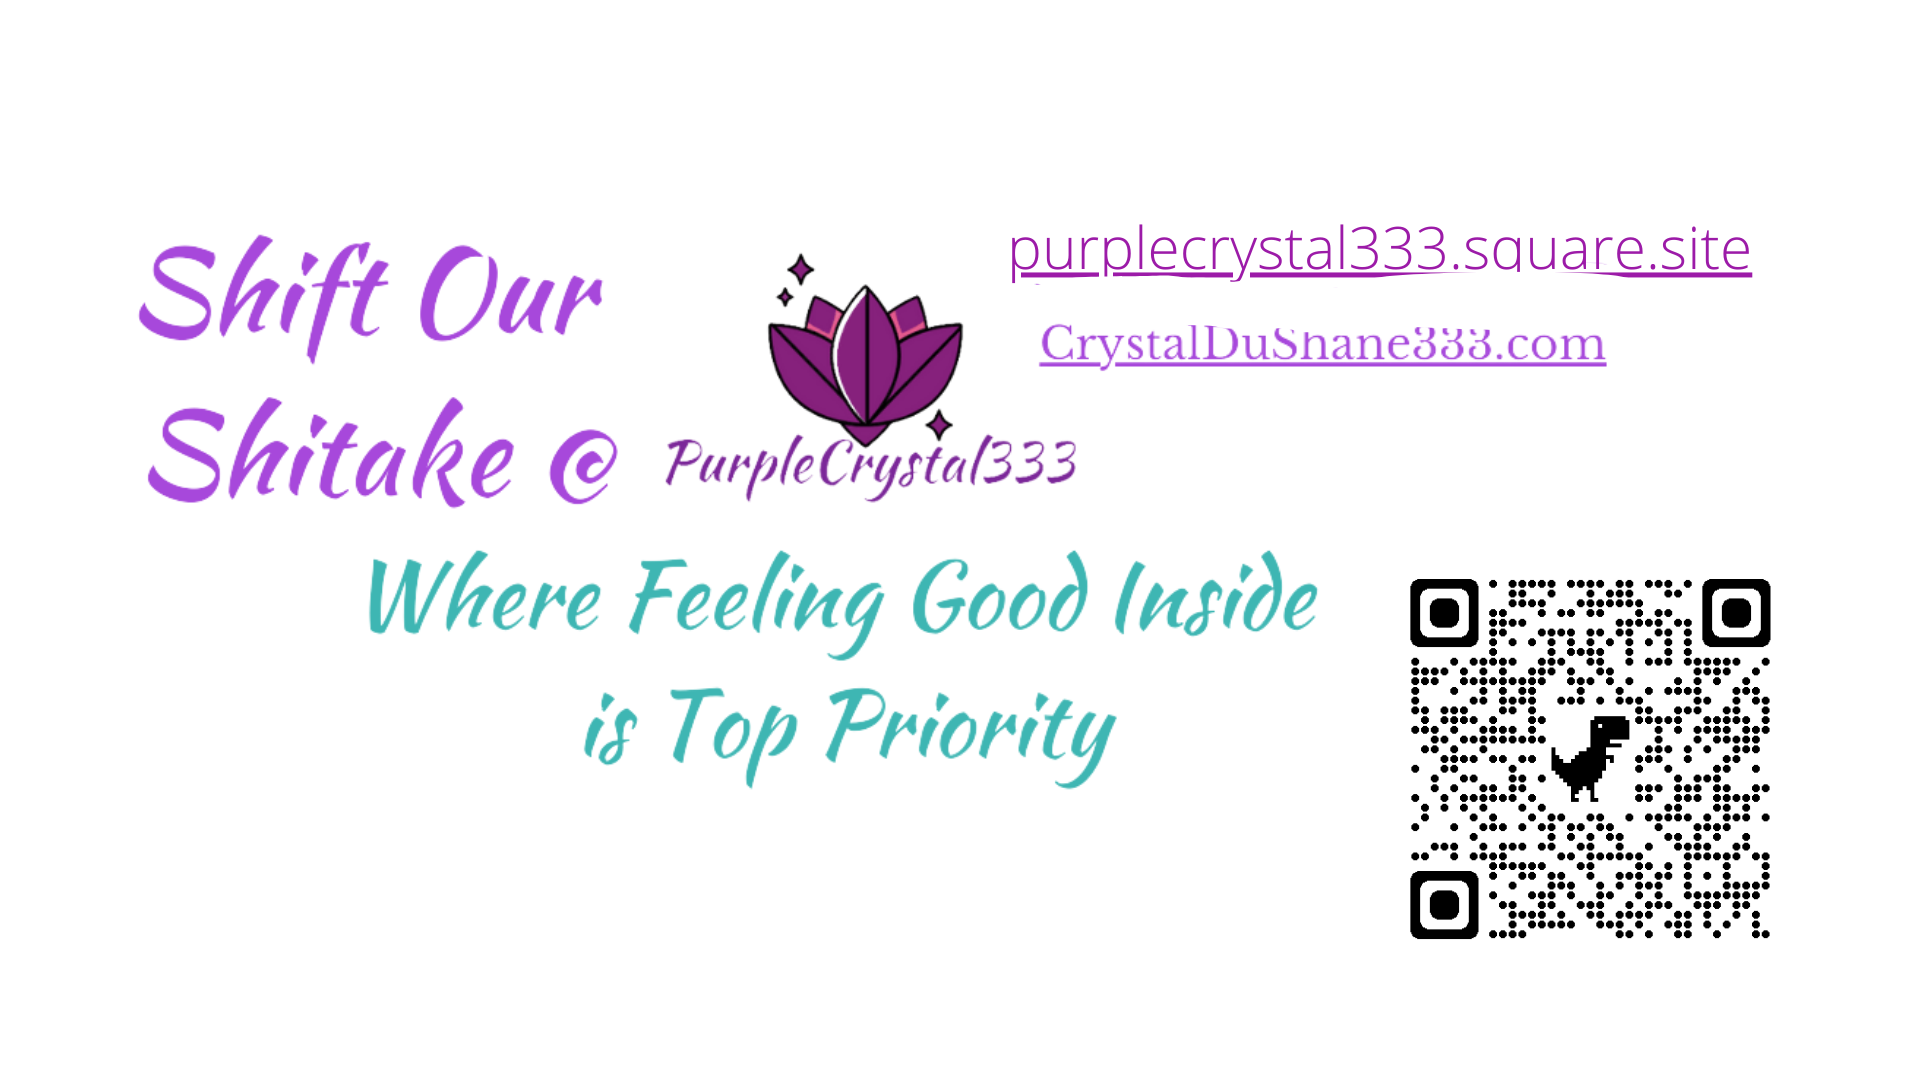 Crystal DuShane of PurpleCrystal333